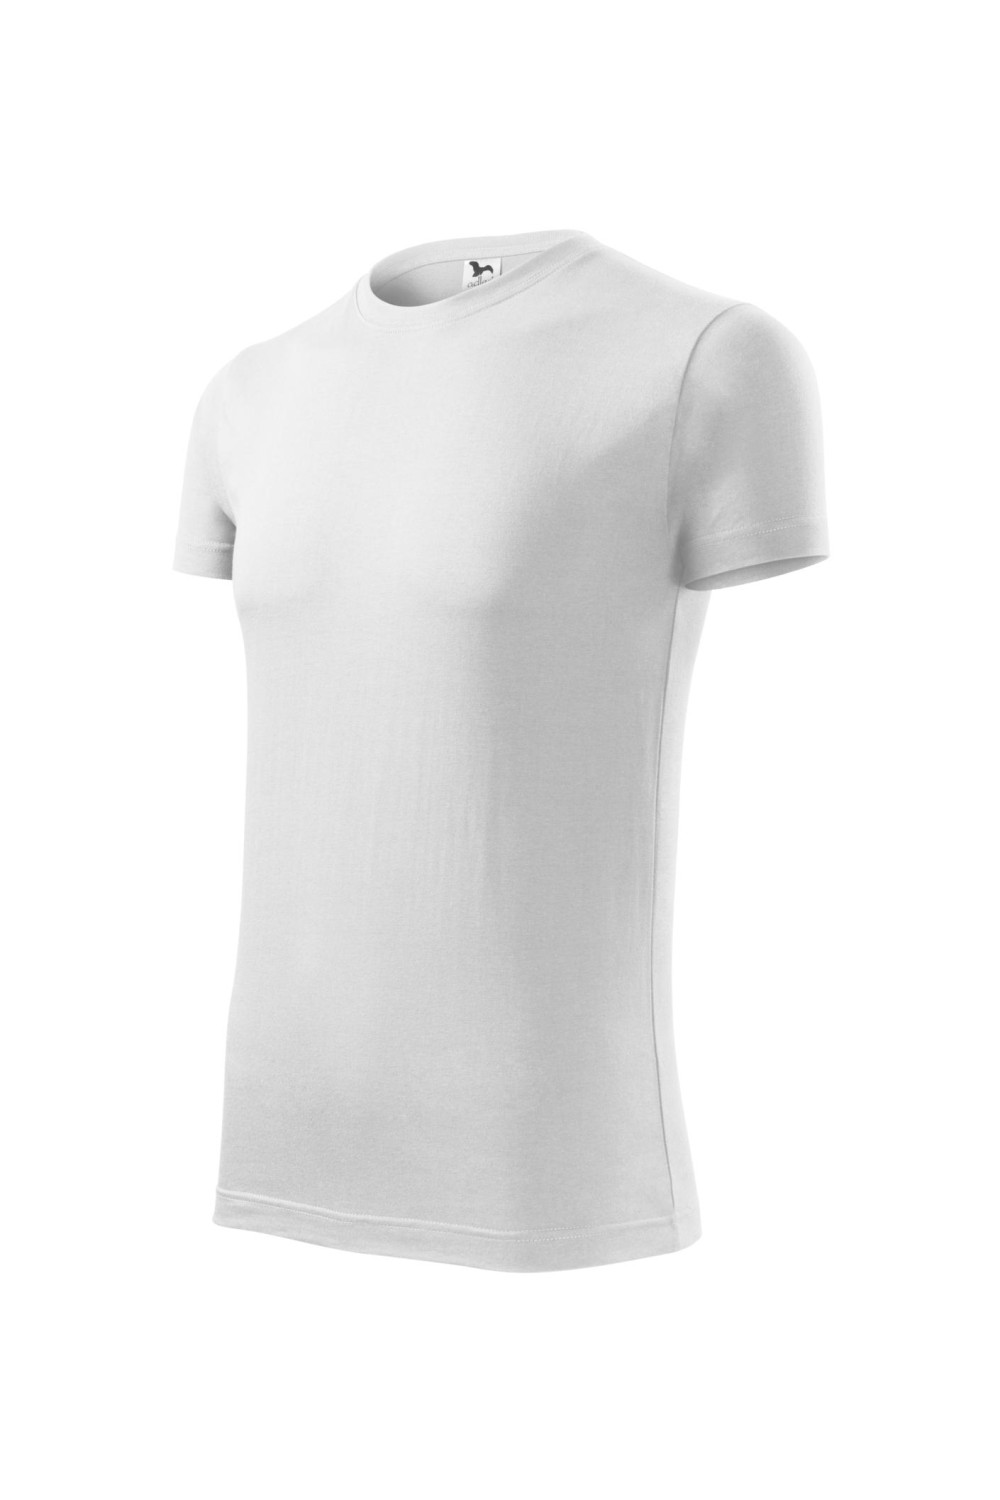 REPLAY 143 MALFINI ADLER Koszulka męska 100% bawełna biały